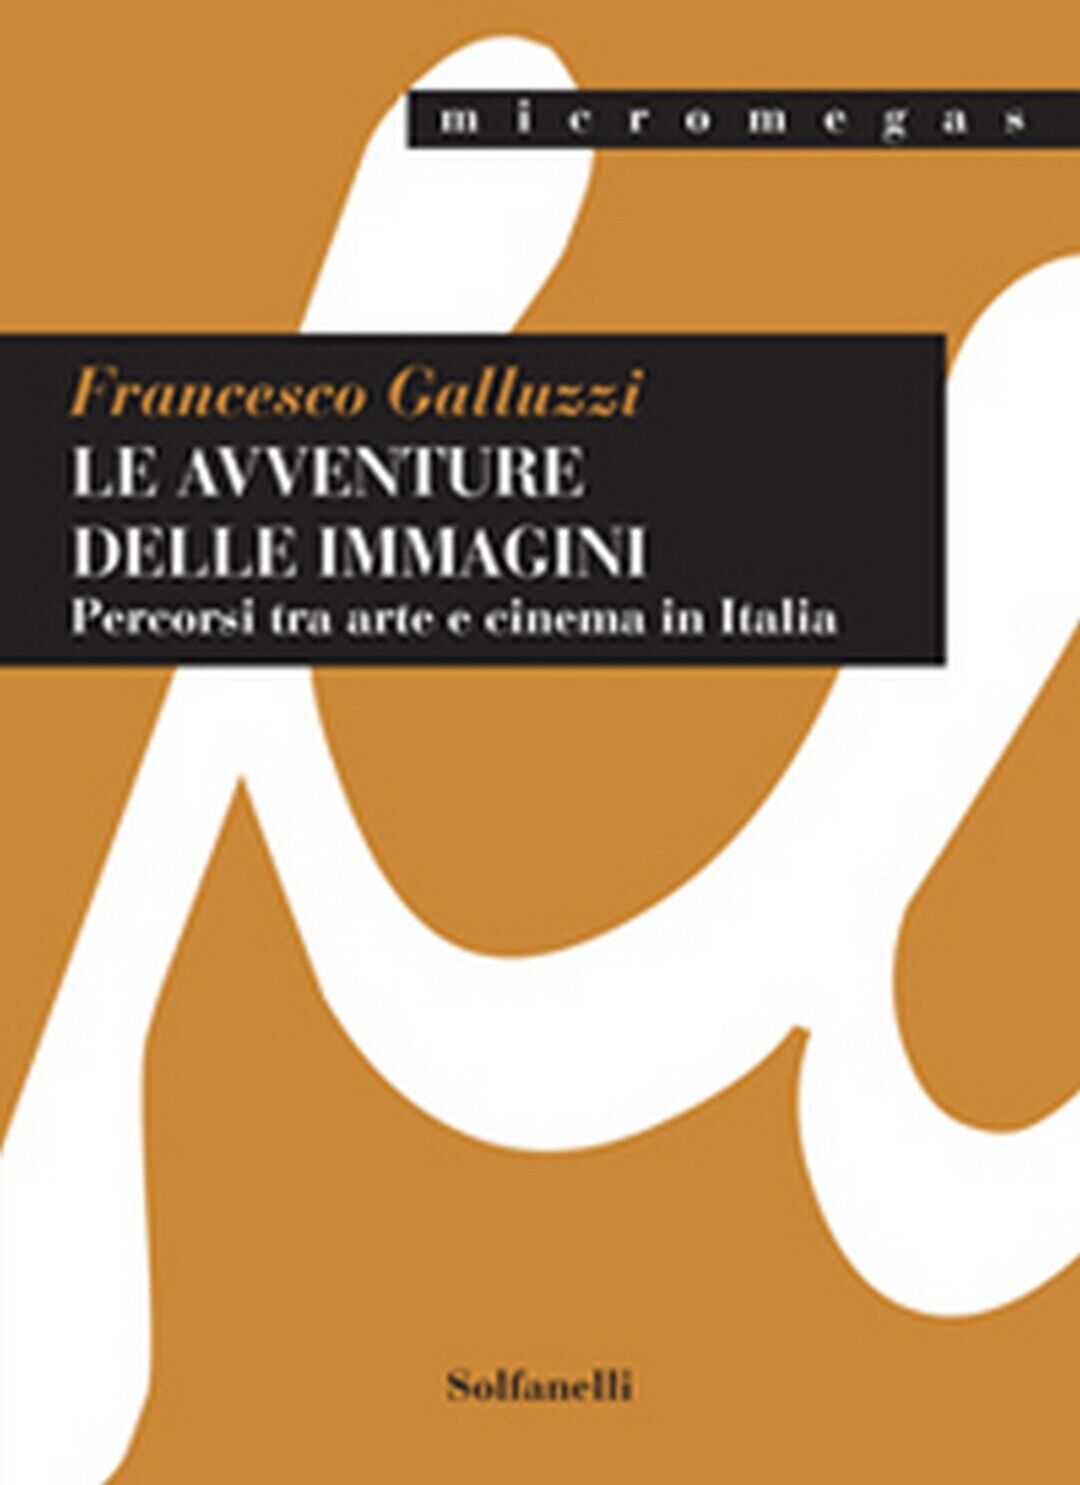 LE AVVENTURE DELLE IMMAGINI Percorsi tra arte e cinema in Italia (F. Galluzzi)